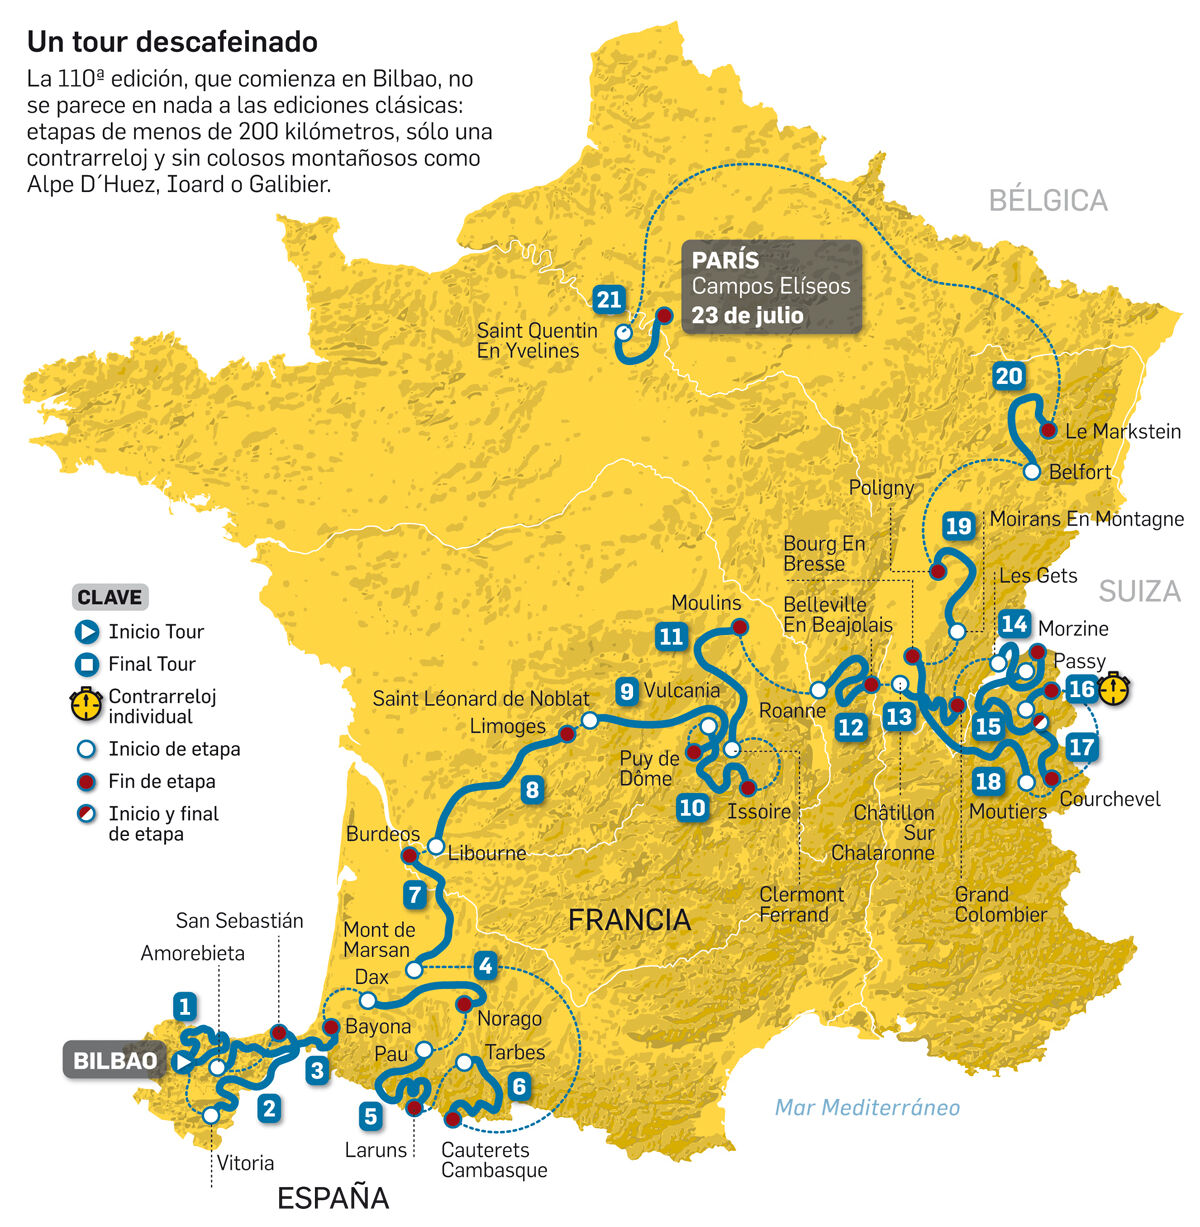 Bilbao lanza una estelar edición del Tour de Francia plagada de montañas